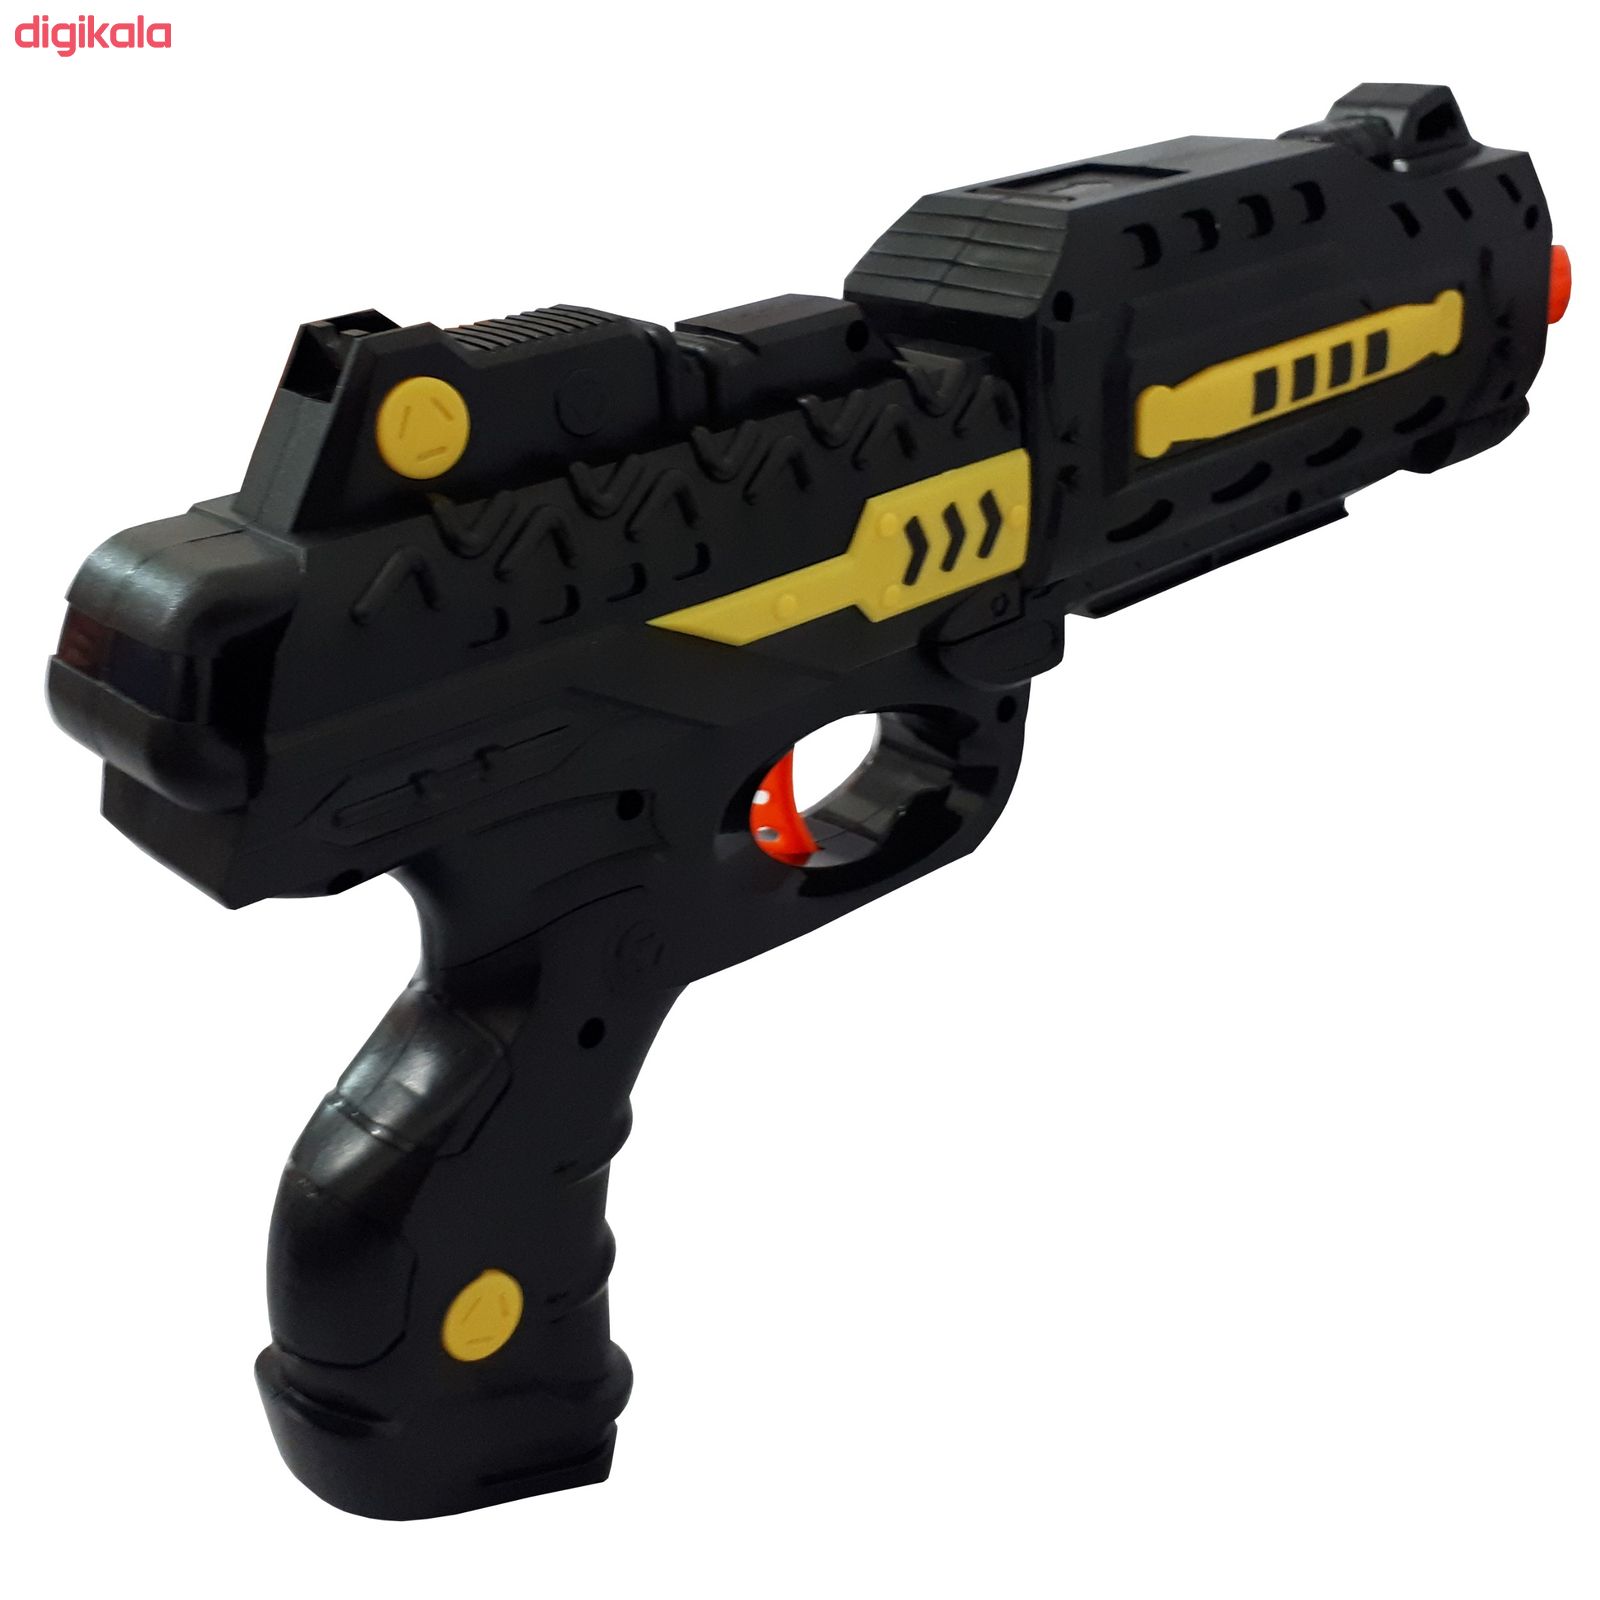 تفنگ بازی یانگ کای مدل SHADOW SNIPER کد 01